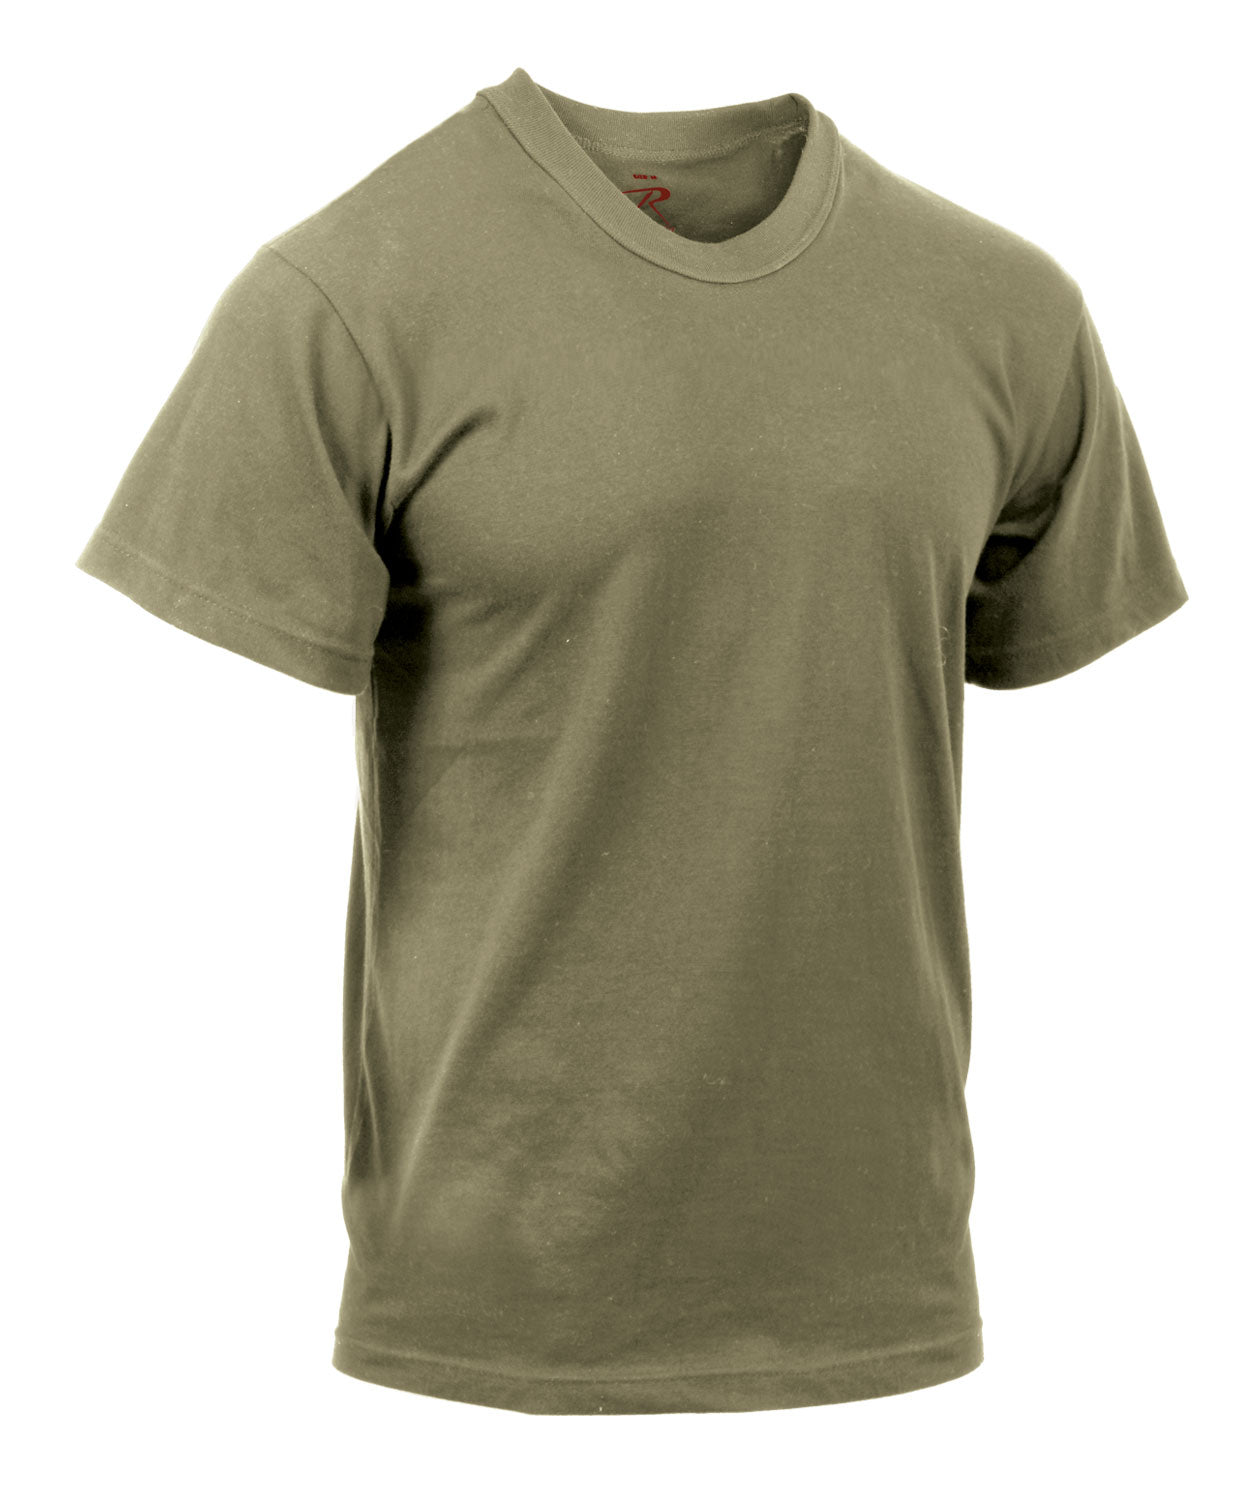 Men's AR 670-1 Coyote Brown T-Shirt - Compliant w/ MultiCam & OCP Uniforms